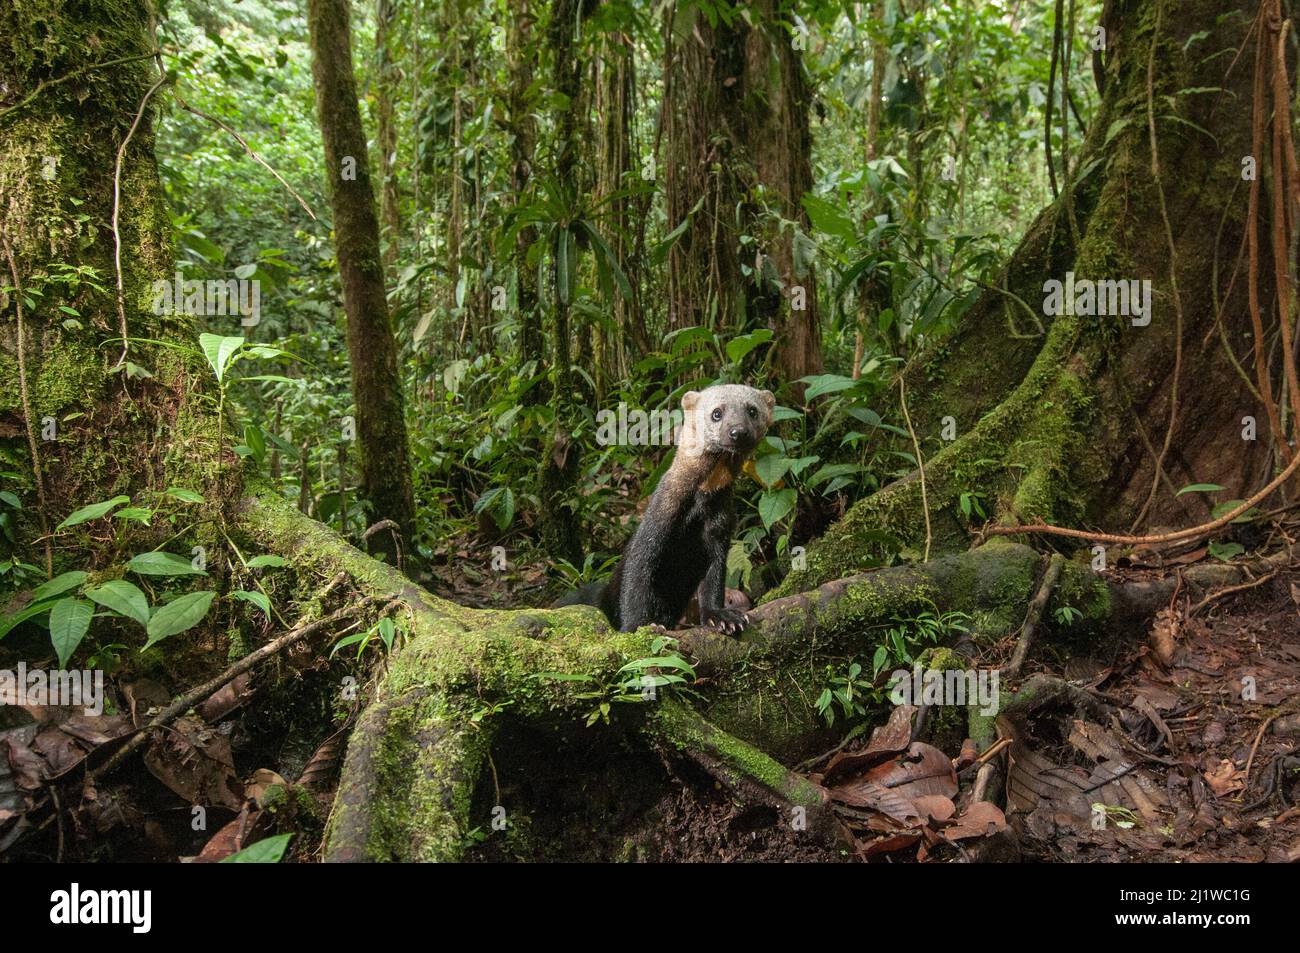 Tarya (Eira barbara) dans la forêt nuageuse, région de Choco, nord-ouest de l'Équateur. Image de recouvrement de la caméra. Banque D'Images